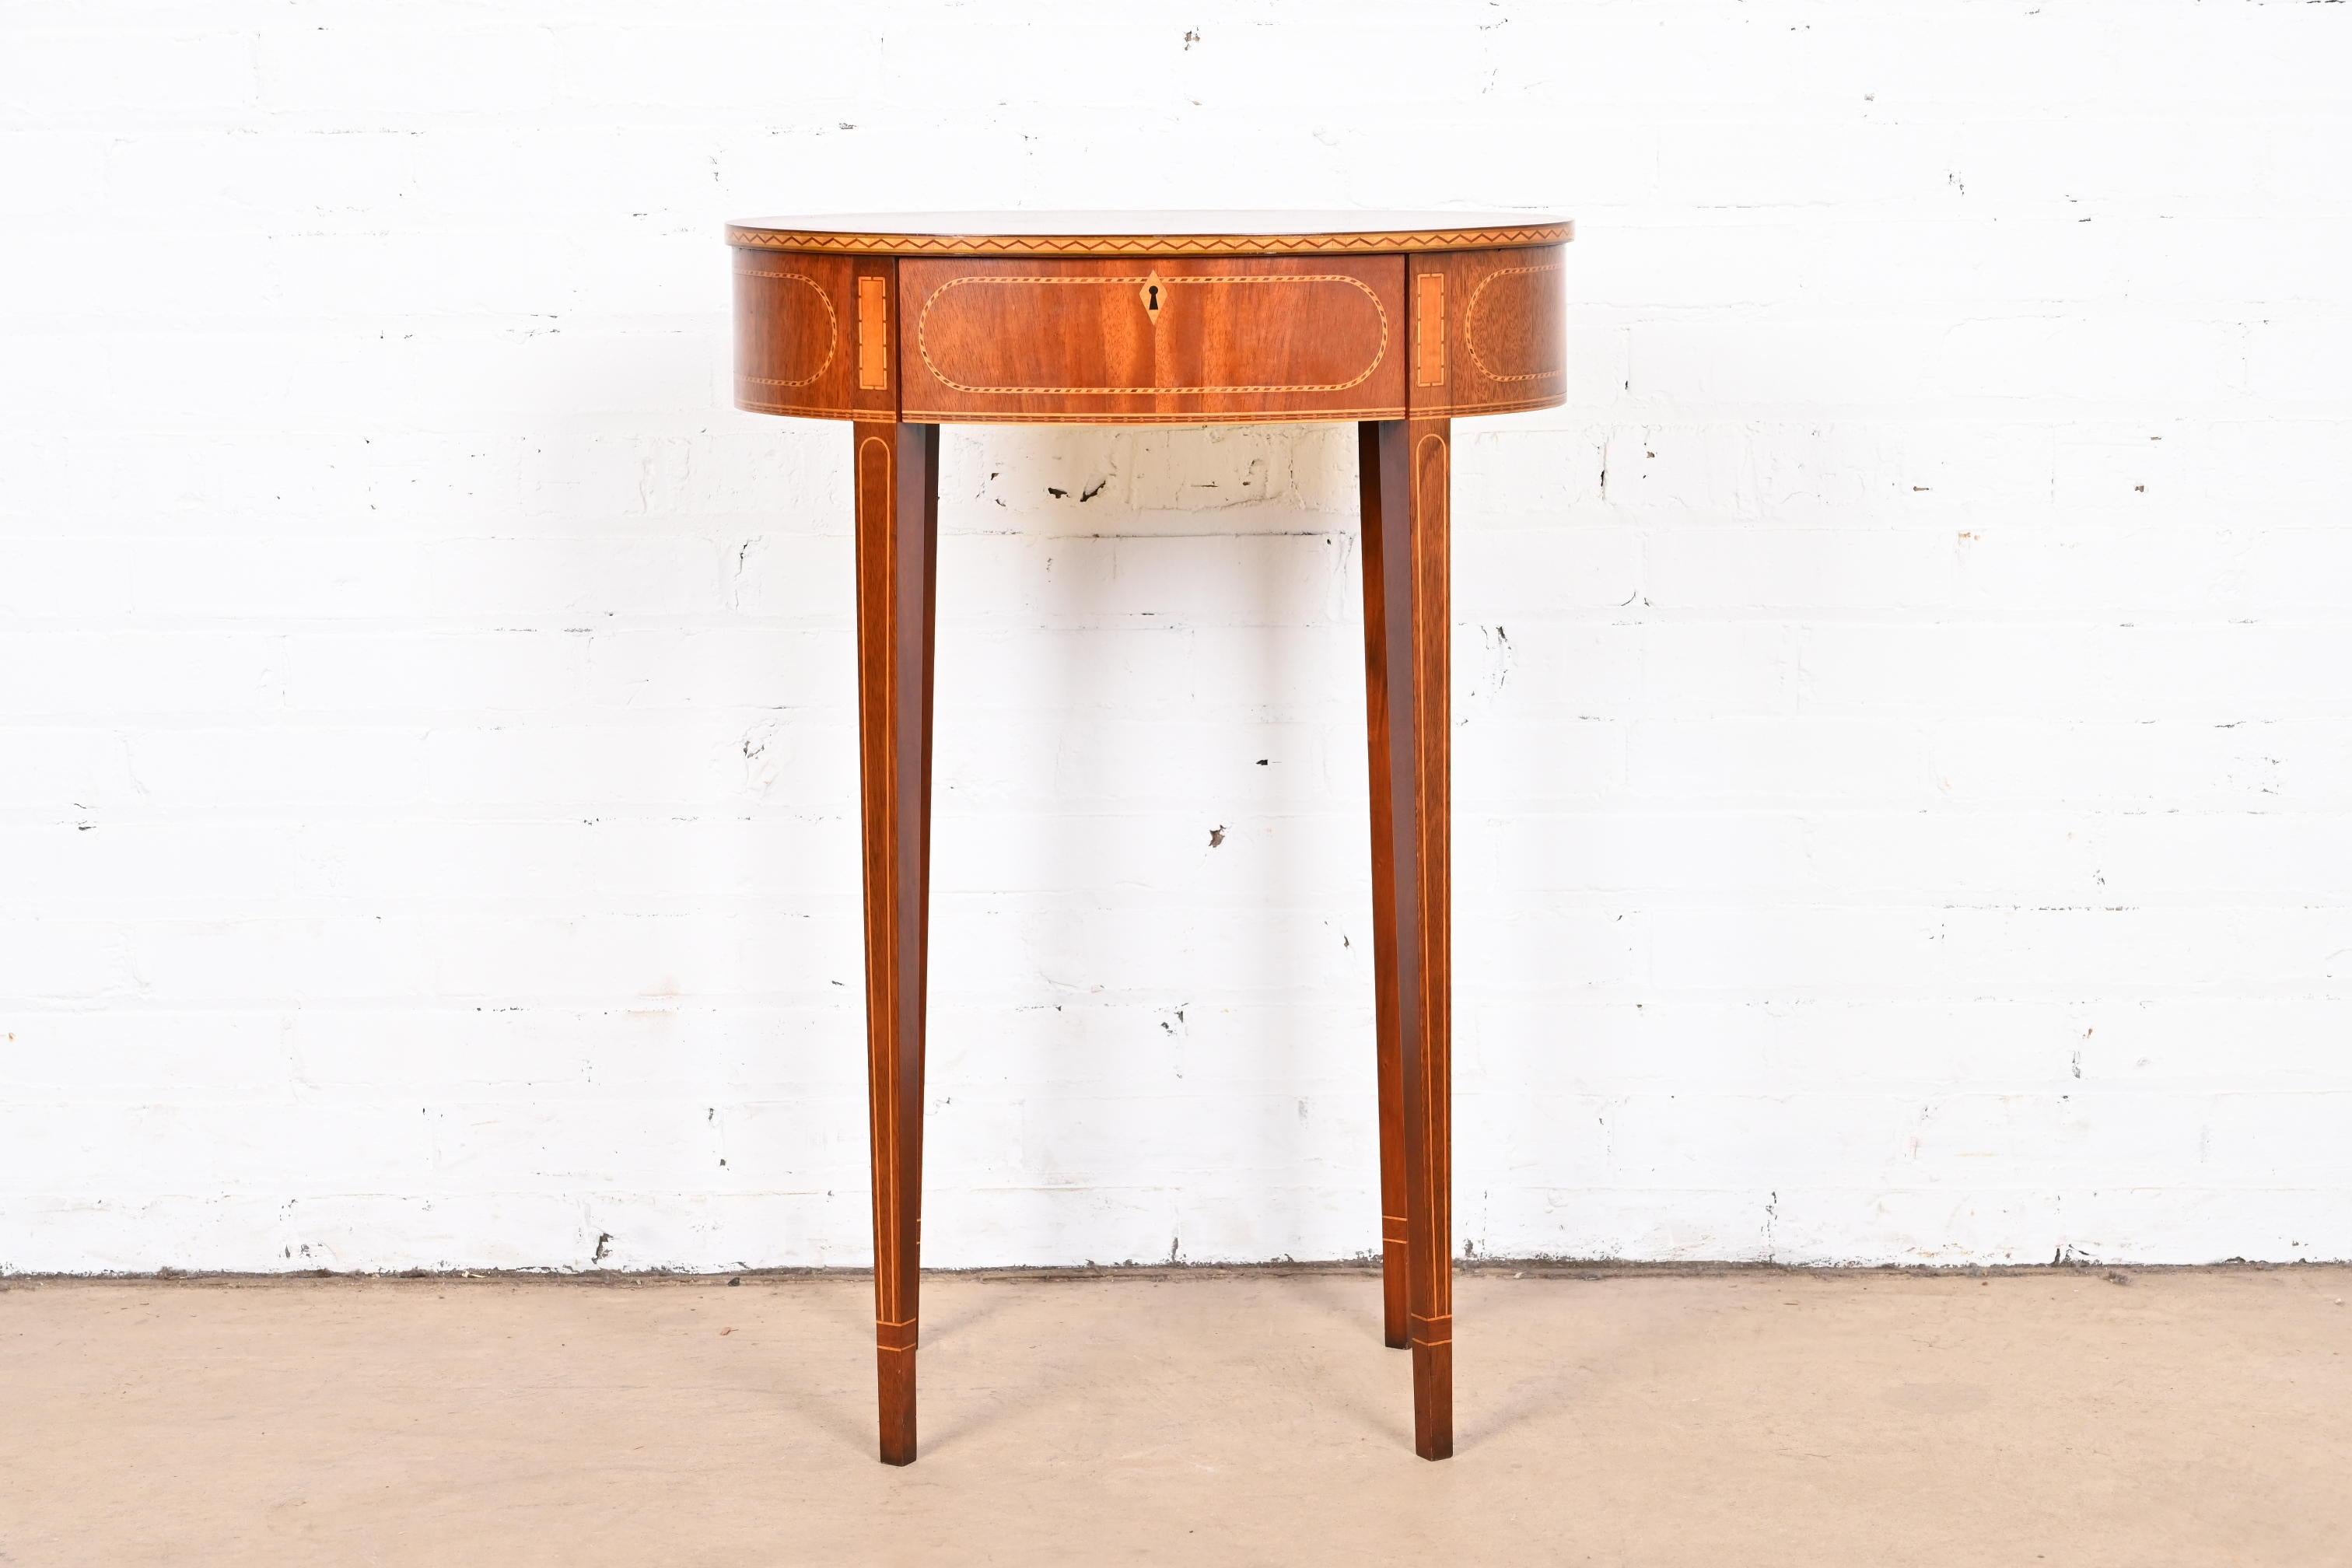 Une magnifique table d'appoint ou table de nuit de style Feder ou Hepplewhite.

Par Baker Furniture, Collection 